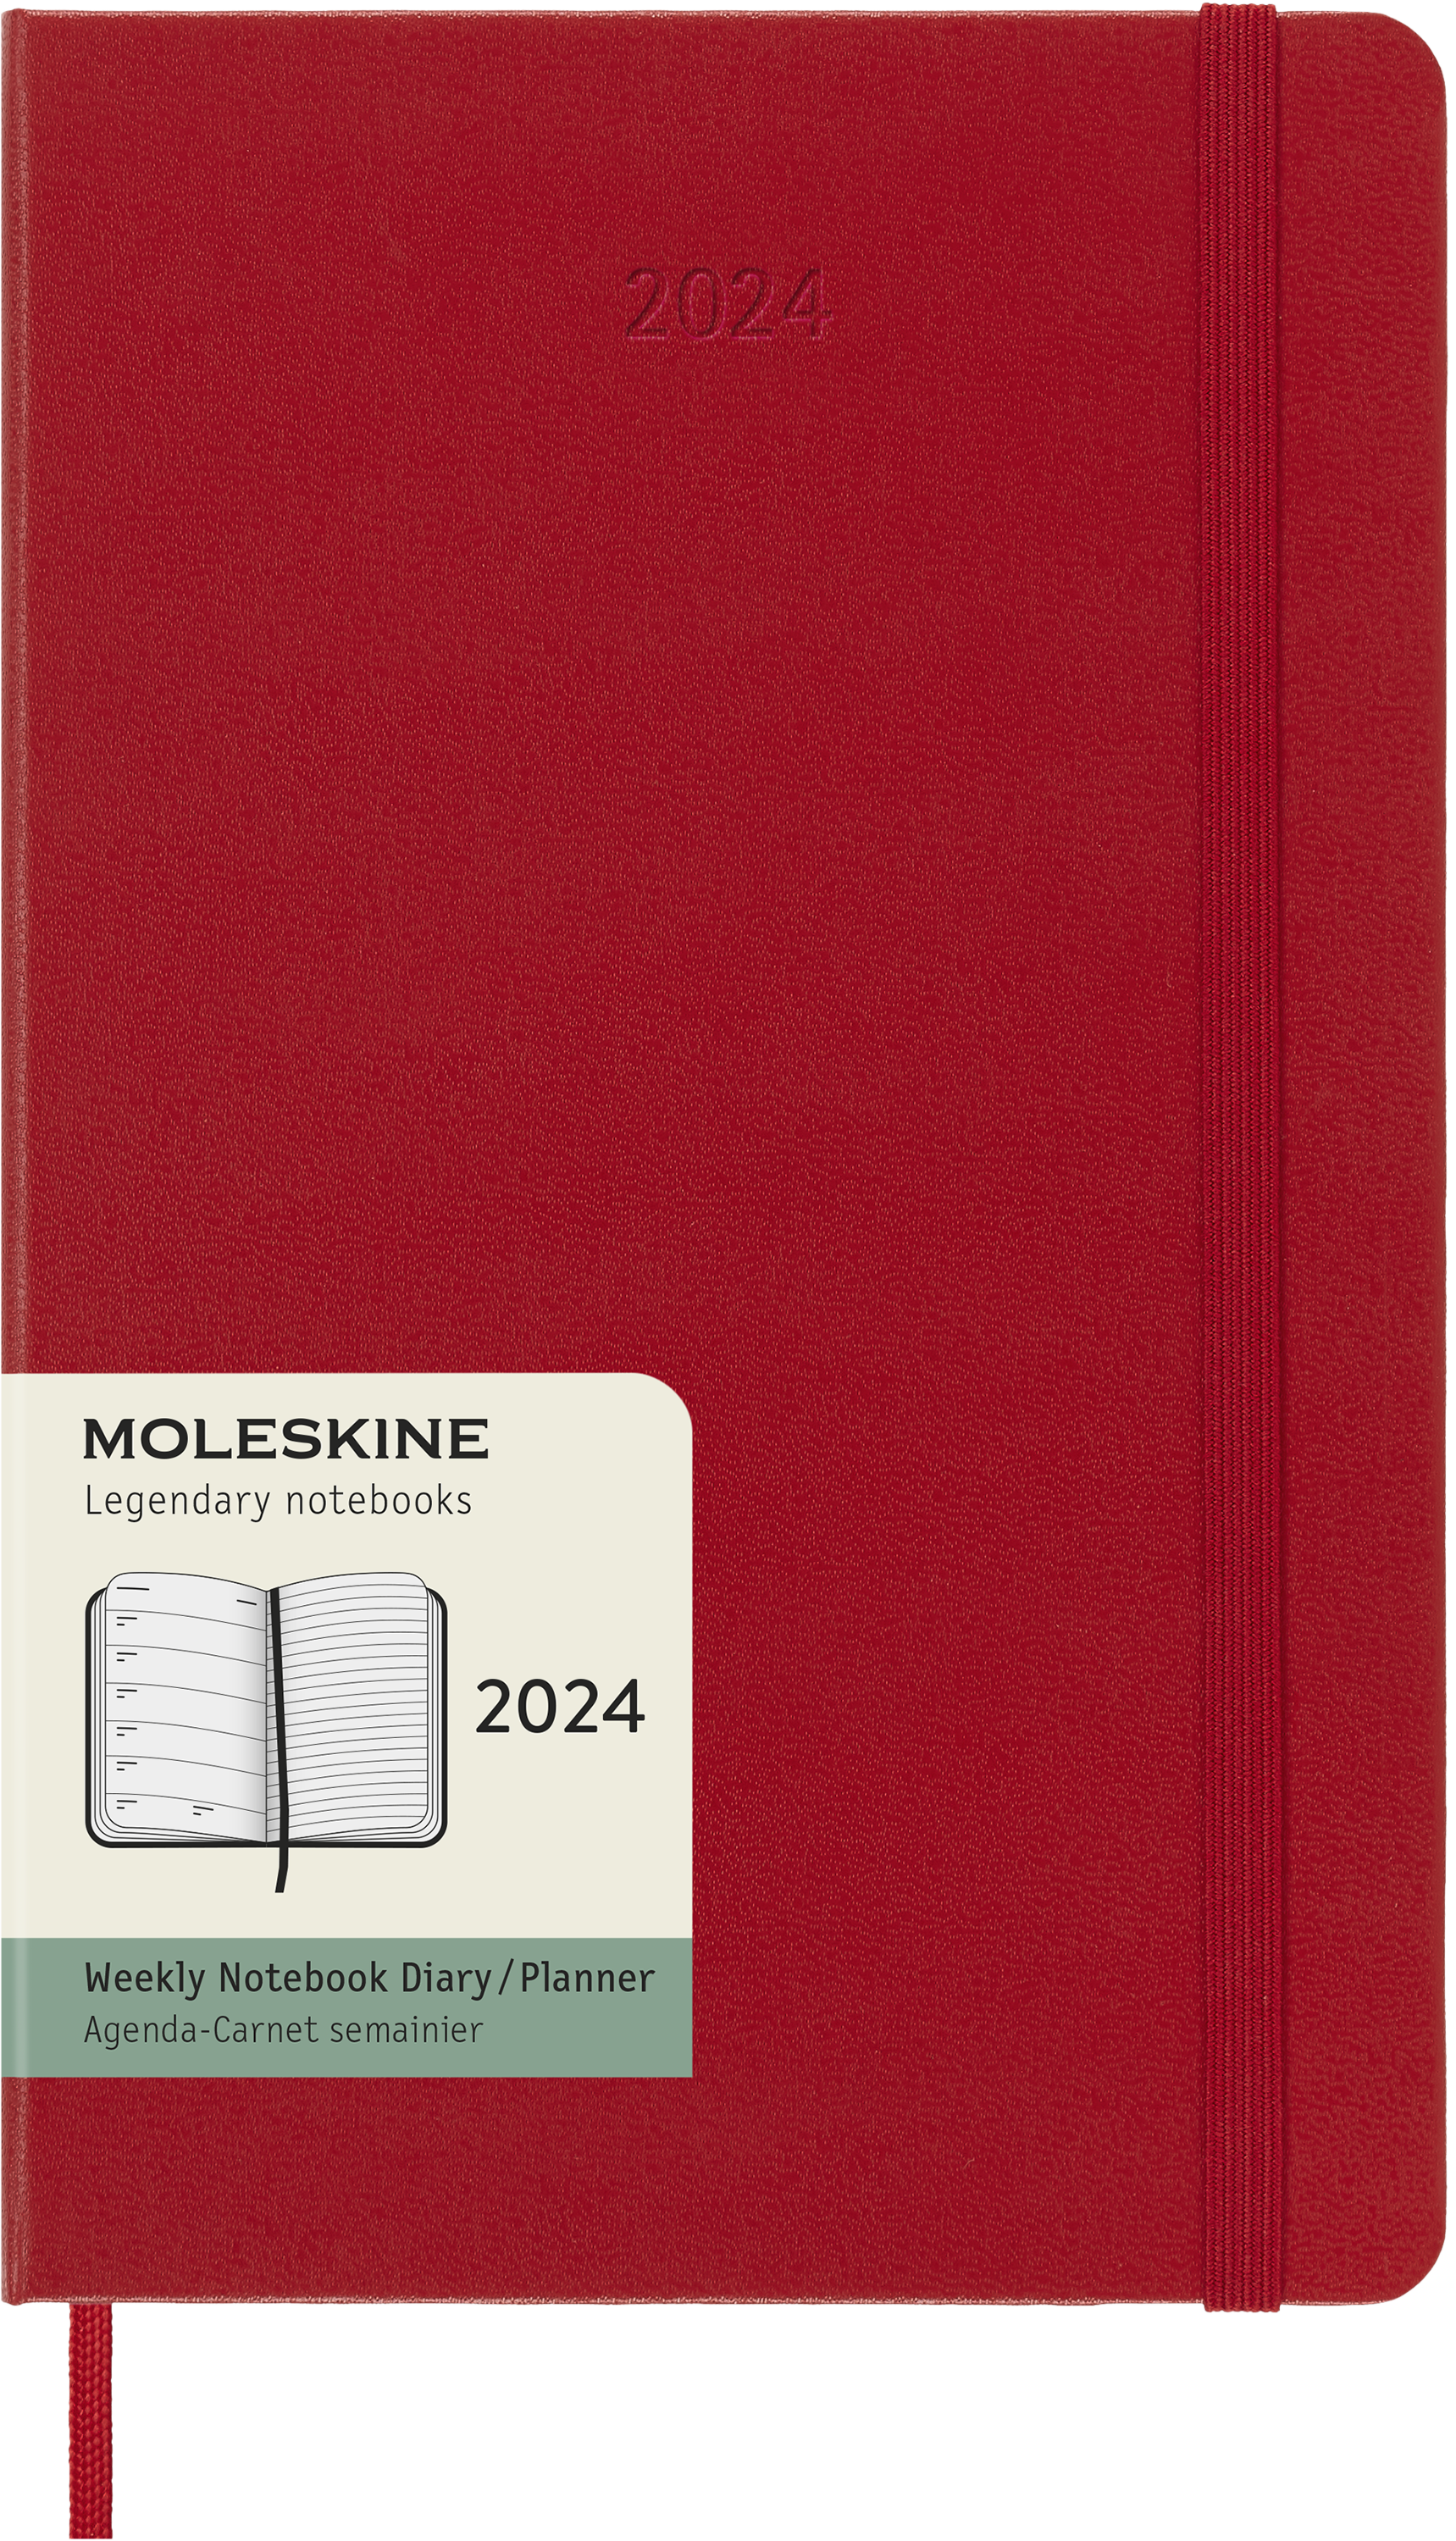 Moleskine 2024 agenda hardcover large week